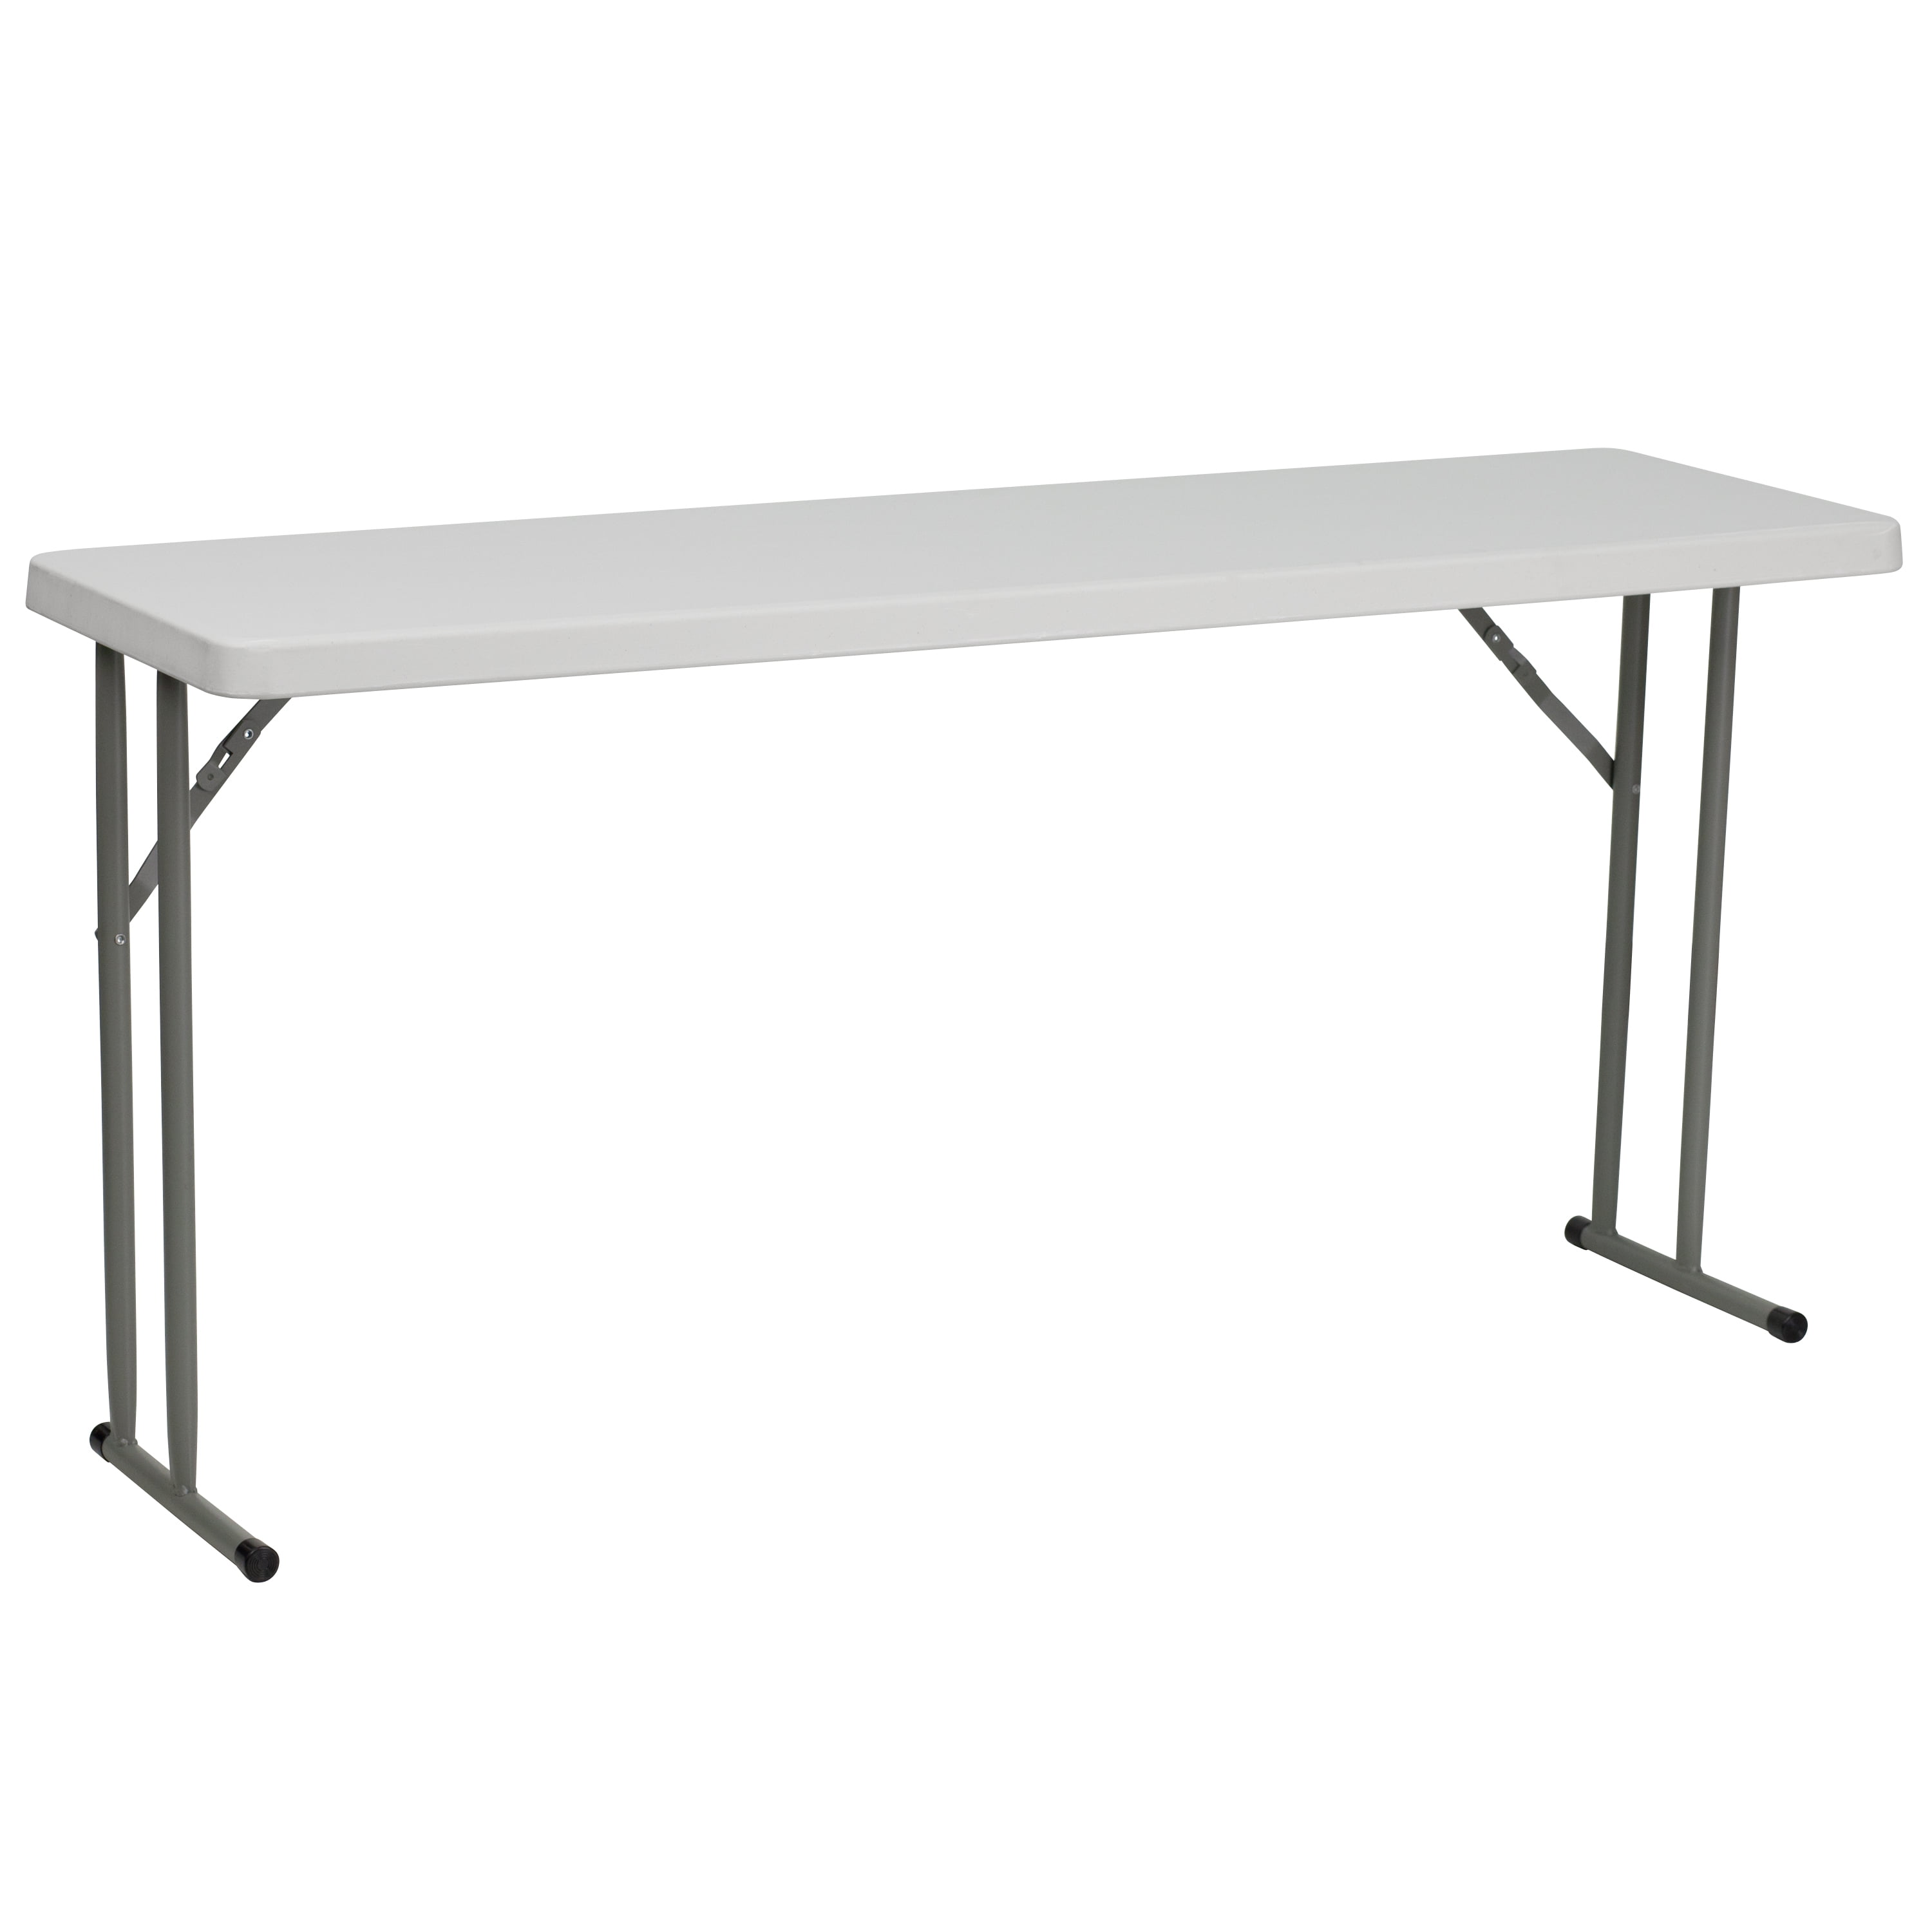 Стол для семинаров. Oткидной стол Spacebox, Calligaris;. Стол складной ft140 Chrome. Узкий стол. Длинный узкий столик.